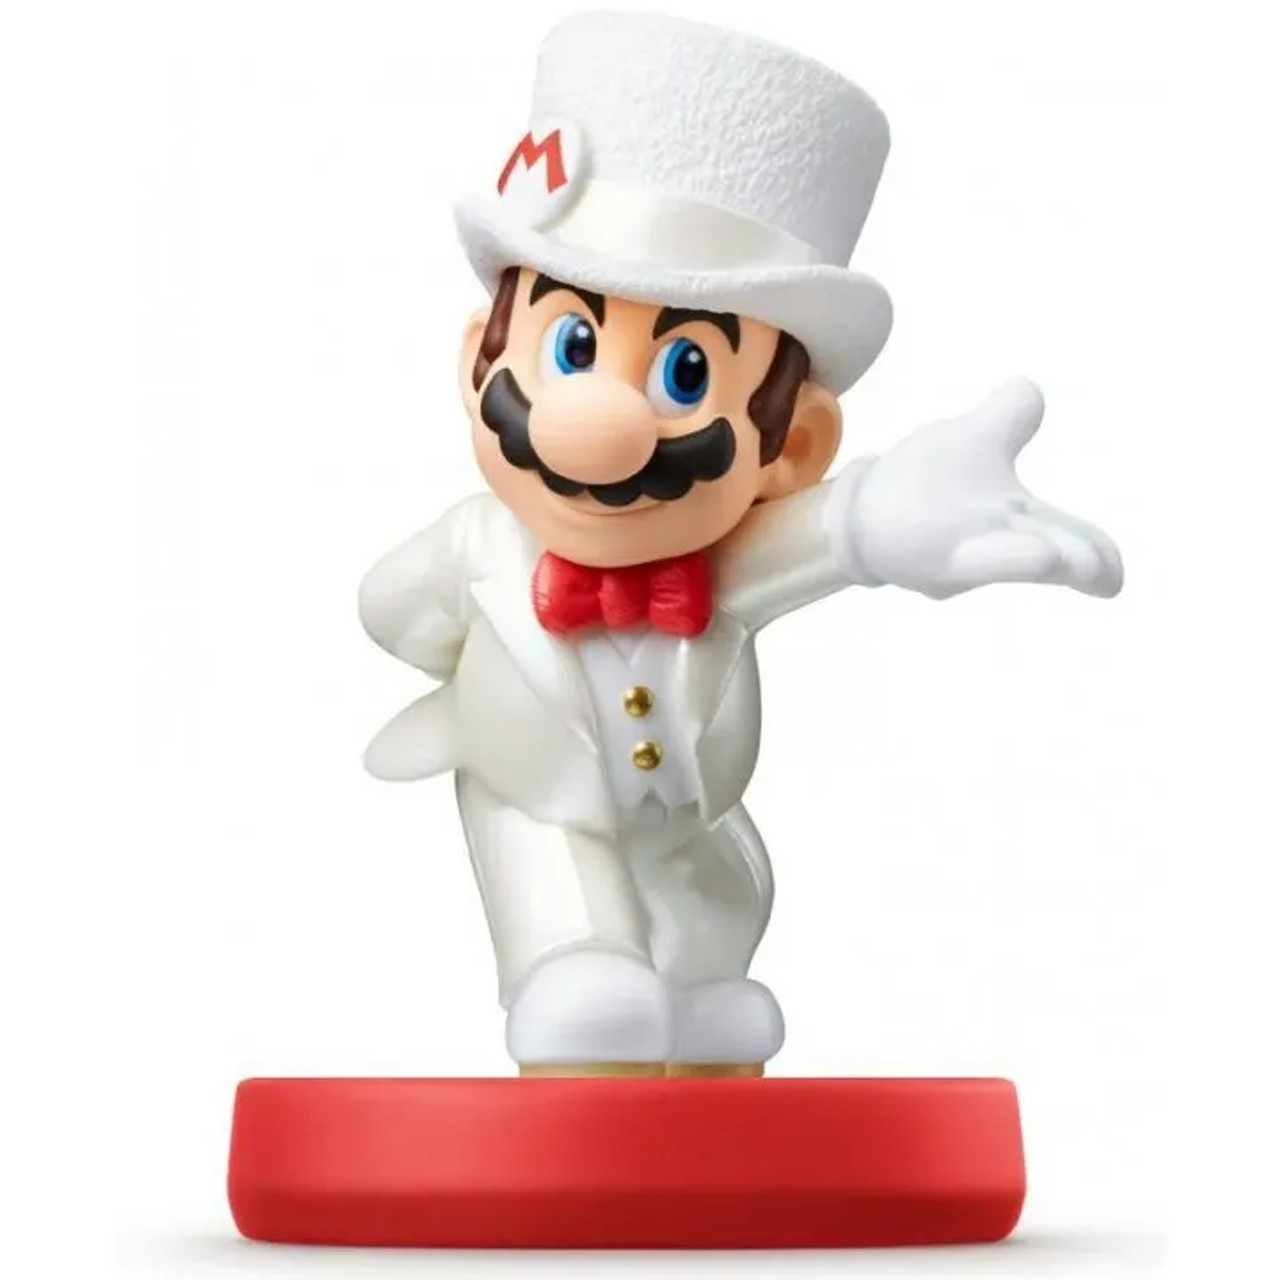 Amiibo Cat Mario Super Mario Series - Switch 3Ds Wii U - Game Games - Loja  de Games Online